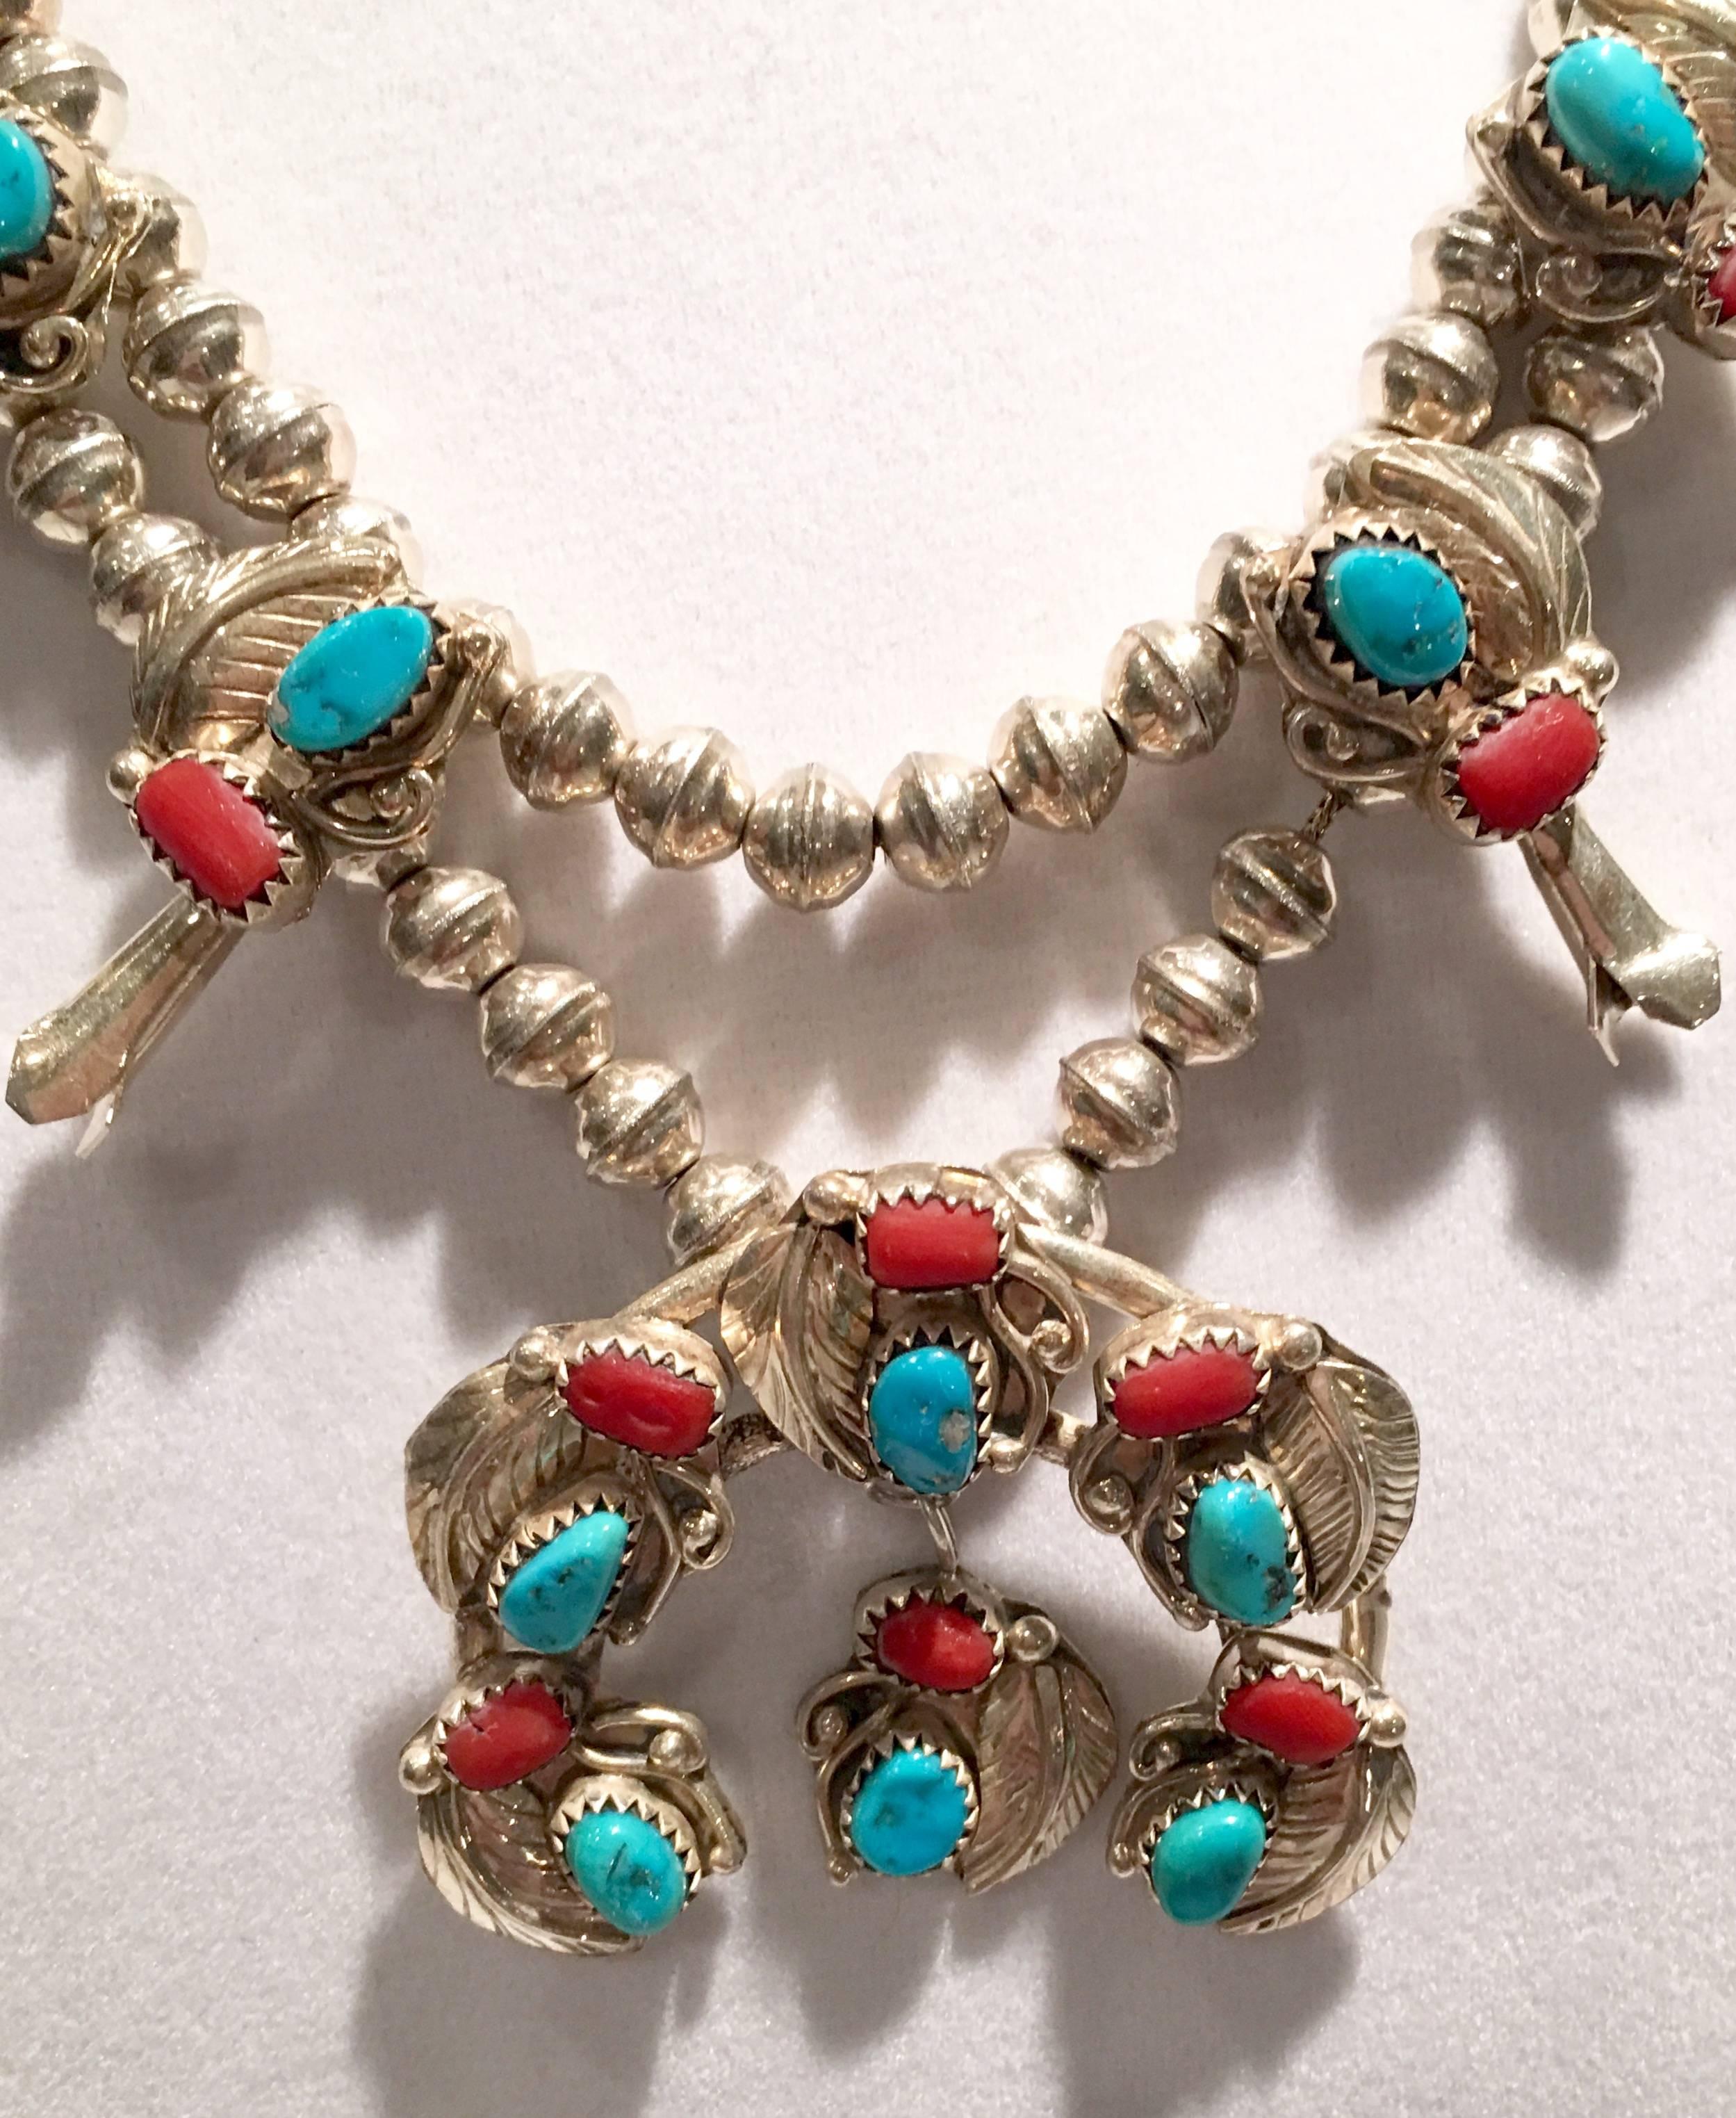 types of navajo necklaces